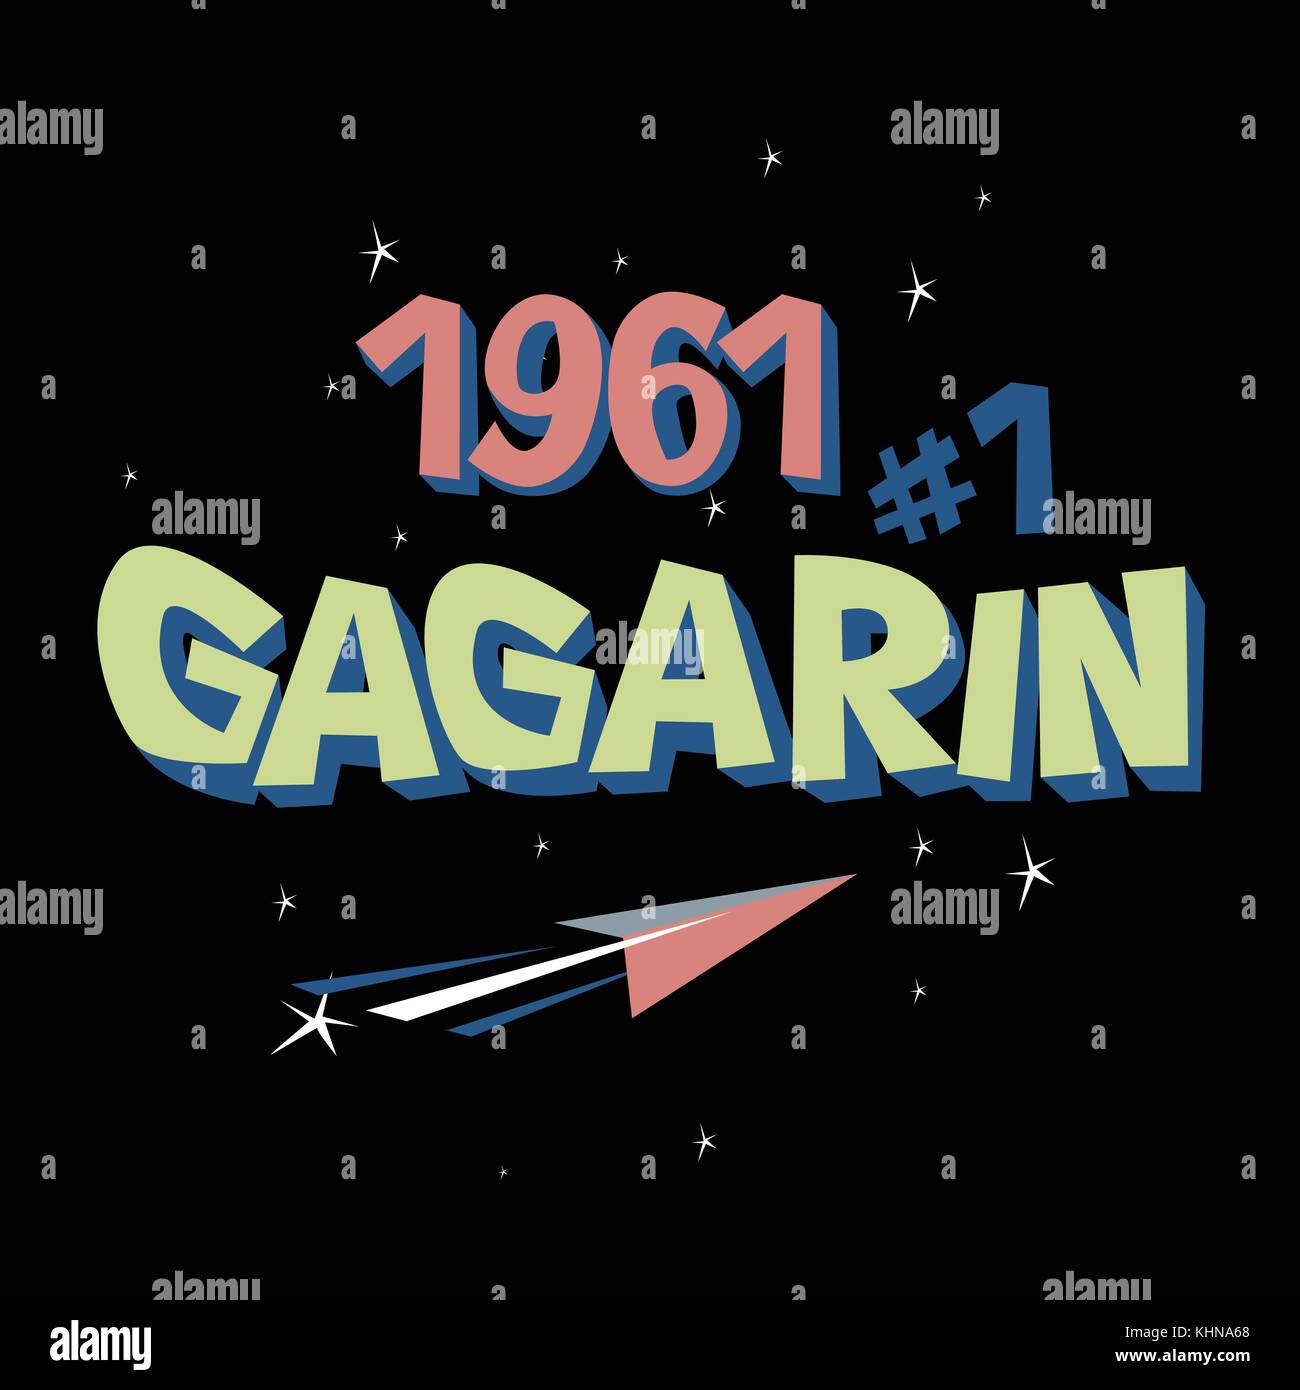 Texte du logo 3068 premier astronaute urss espace, concept Illustration de Vecteur